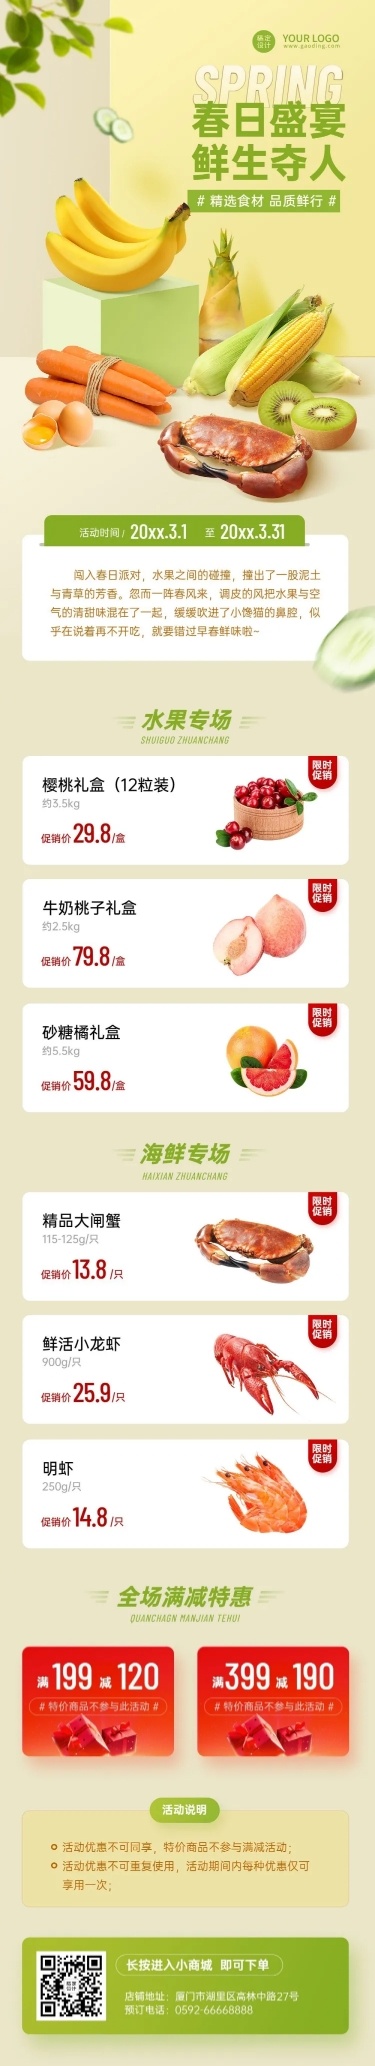 水果生鲜春季营销促销餐饮文章长图